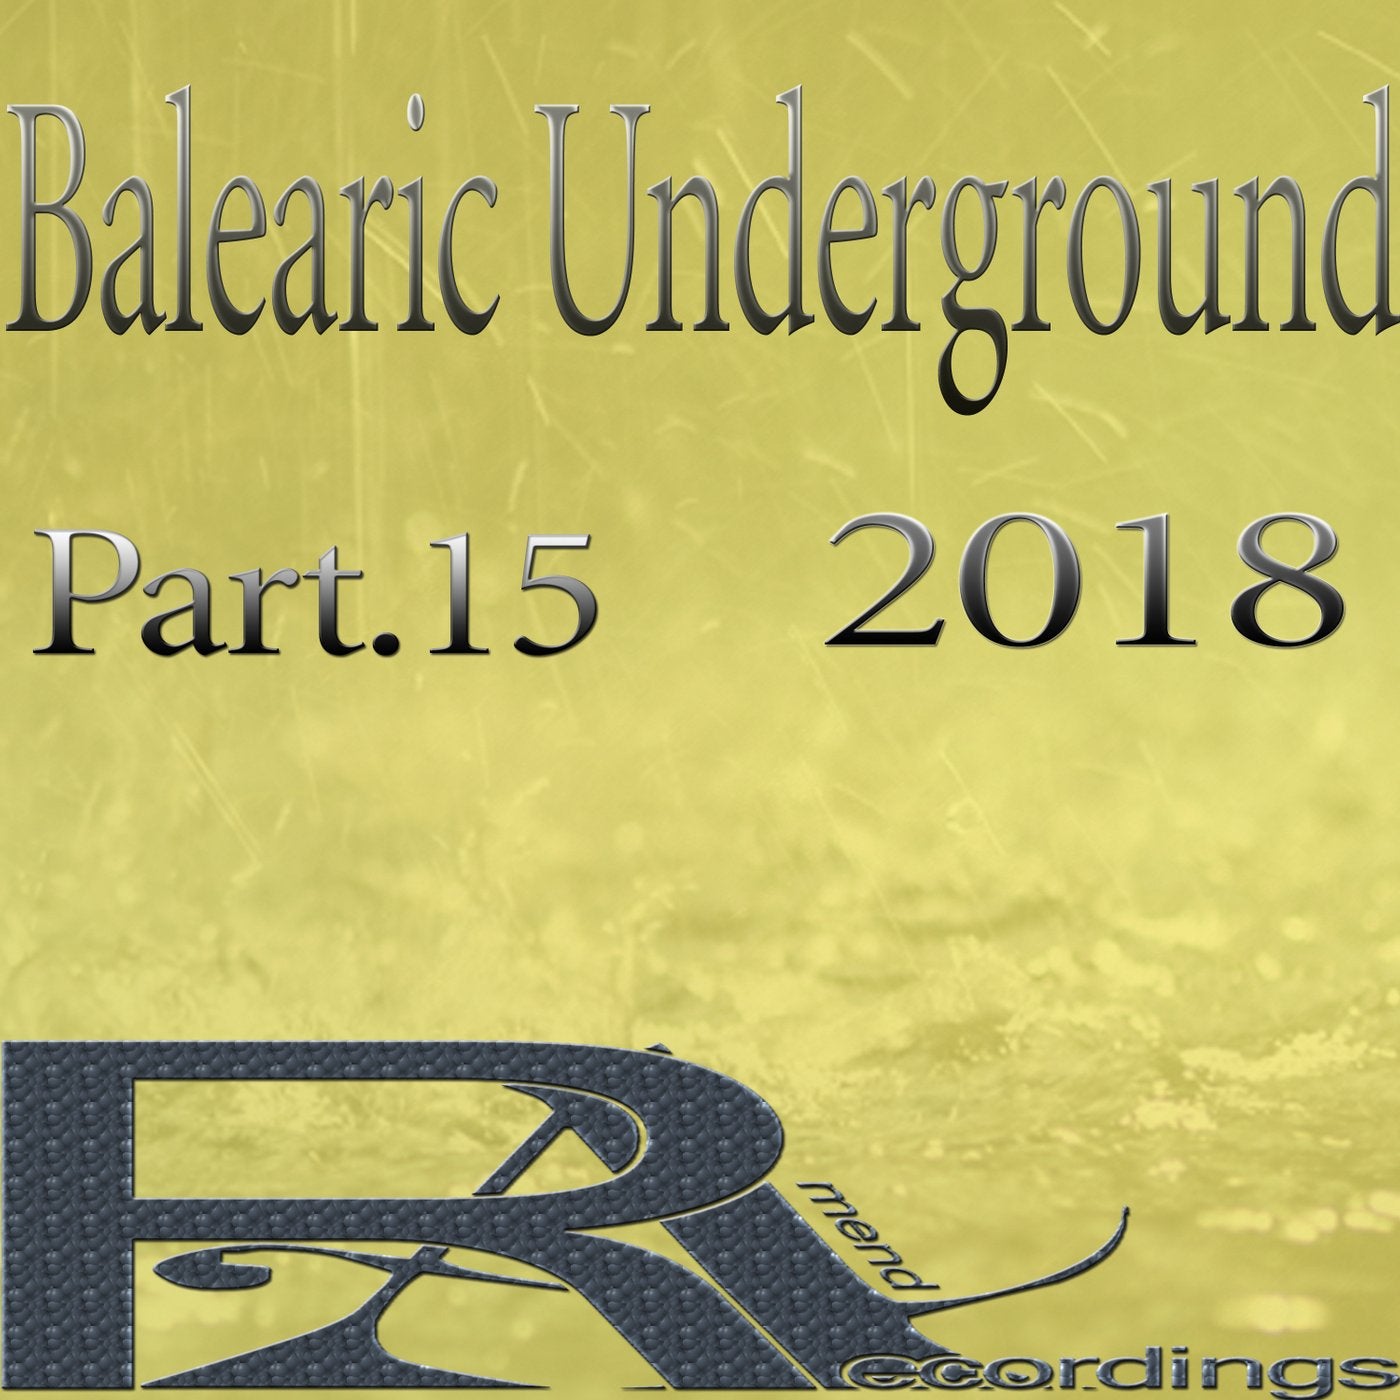 Balearic Underground 2018, Pt. 15